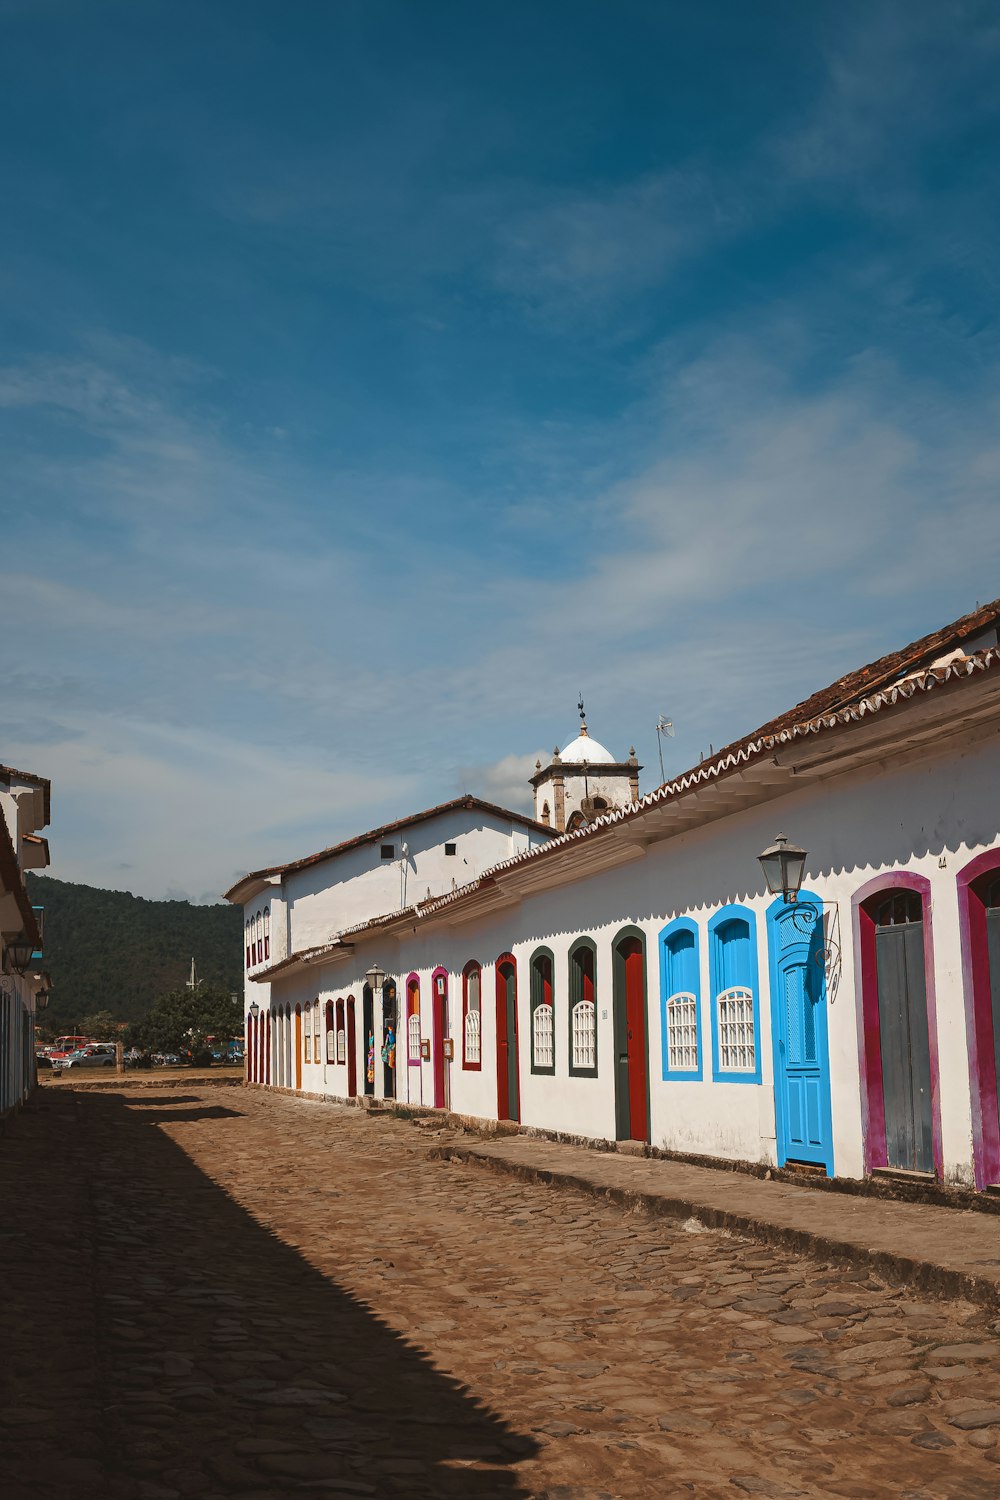 Una calle empedrada bordeada de edificios multicolores